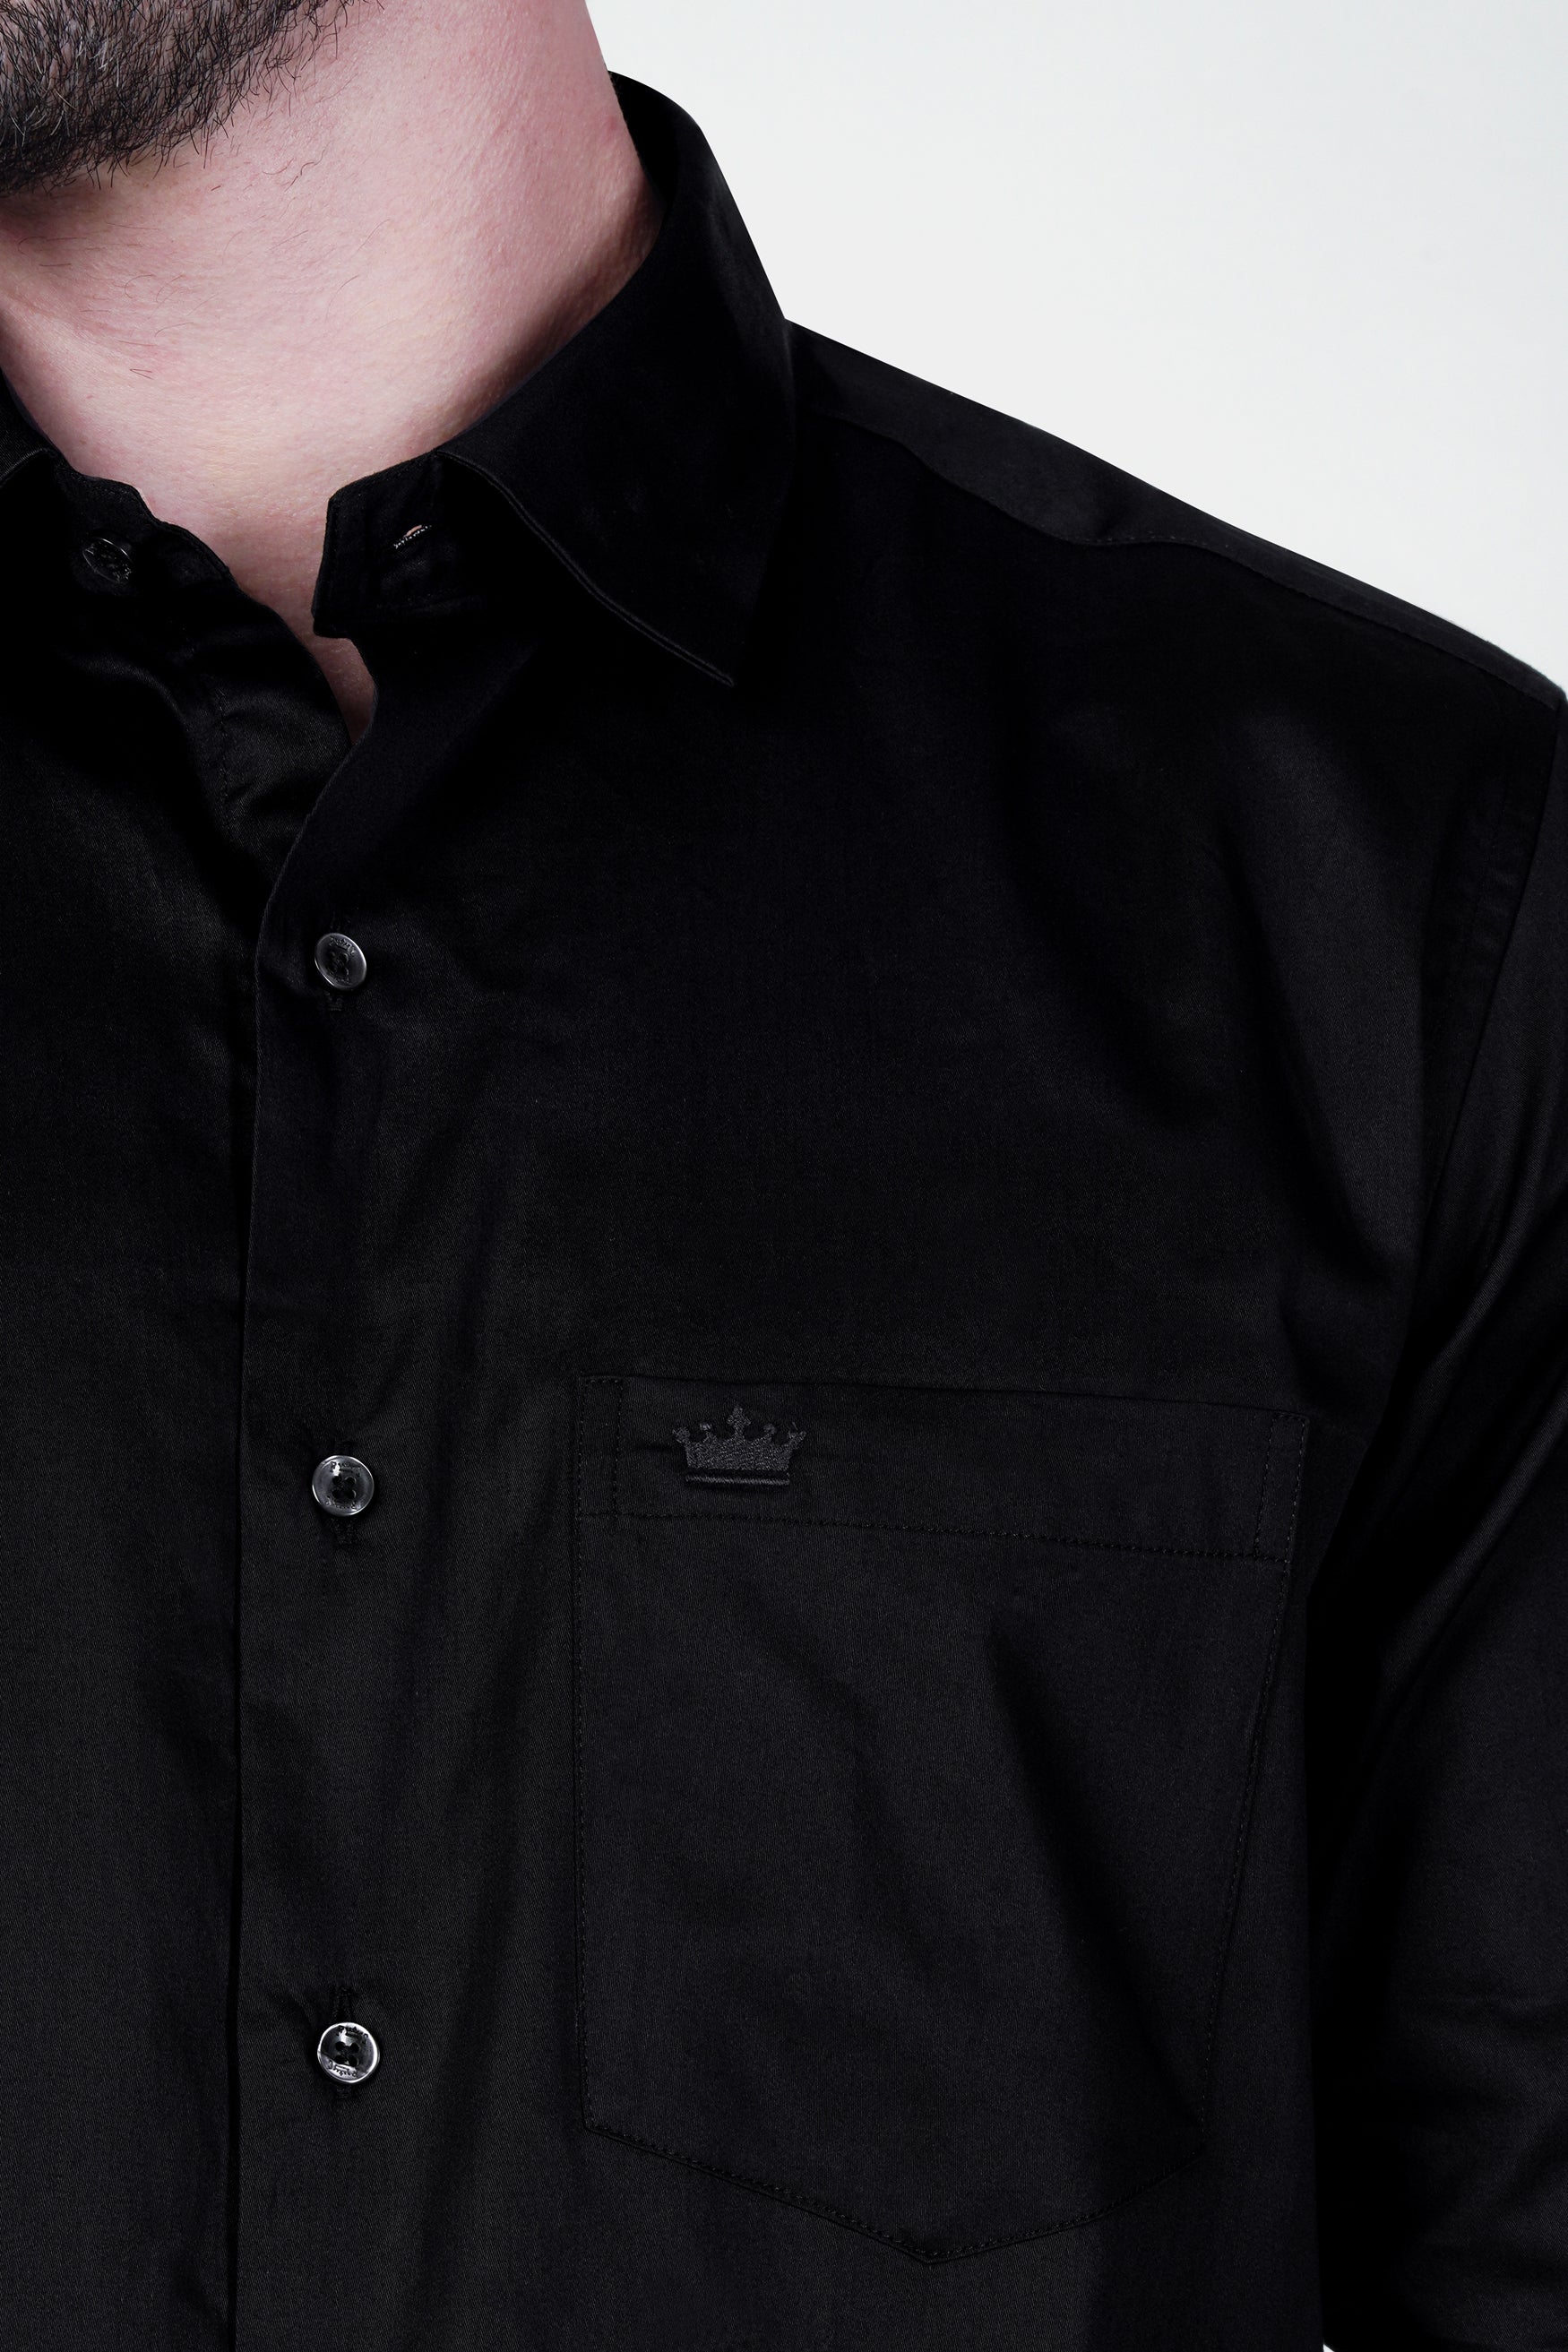 Jade Black leather elbow patch  Super Soft Premium Cotton Shirt